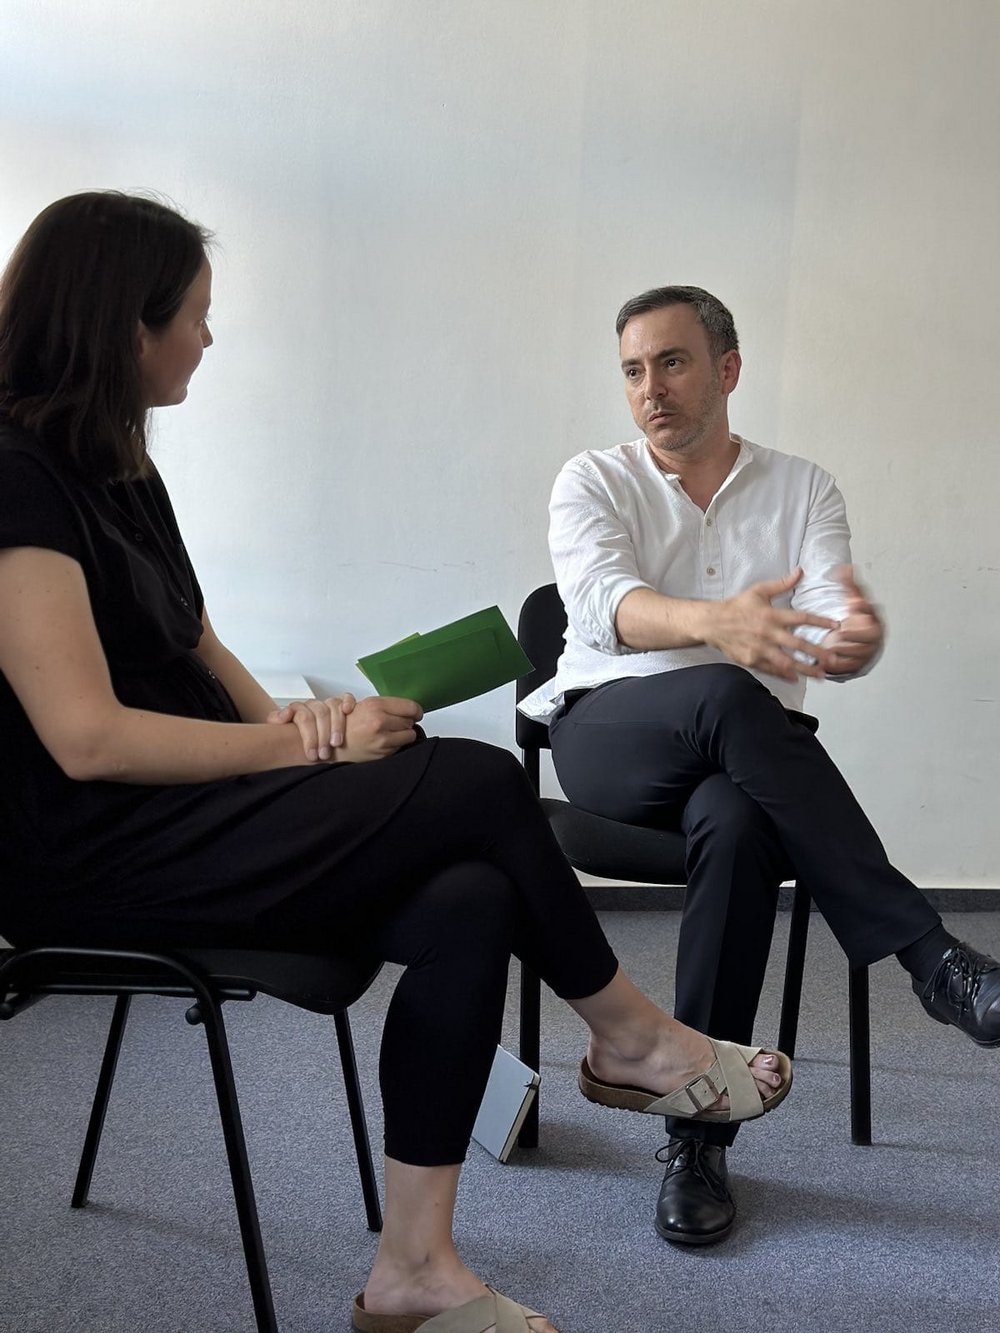 Das Bild zeigt die Kreissprecherin Wiebke Nowack und den Europaabgeordneten Sergey Lagodinsky im Gespräch.